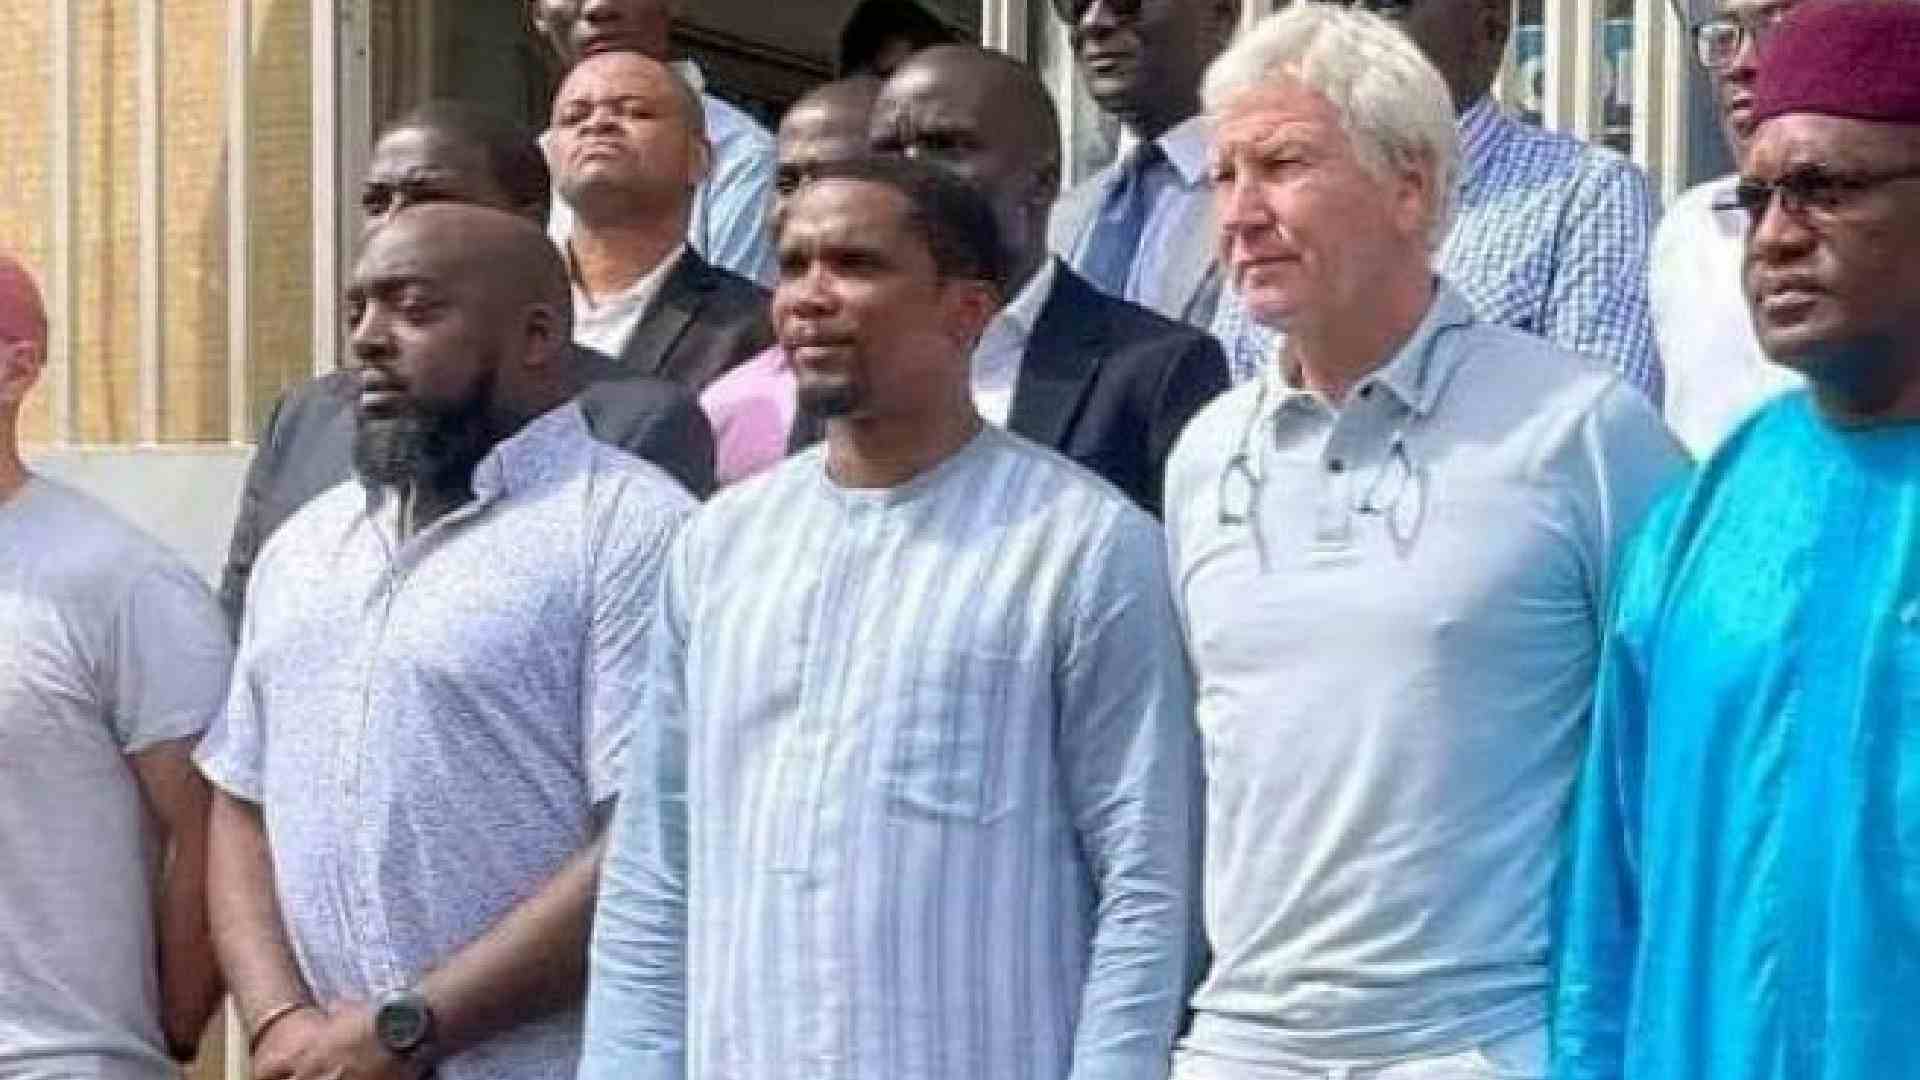 Camerun, la surreale guerra tra Eto'o e il Ministro dello Sport: sgarbi, sequestri e ripicche